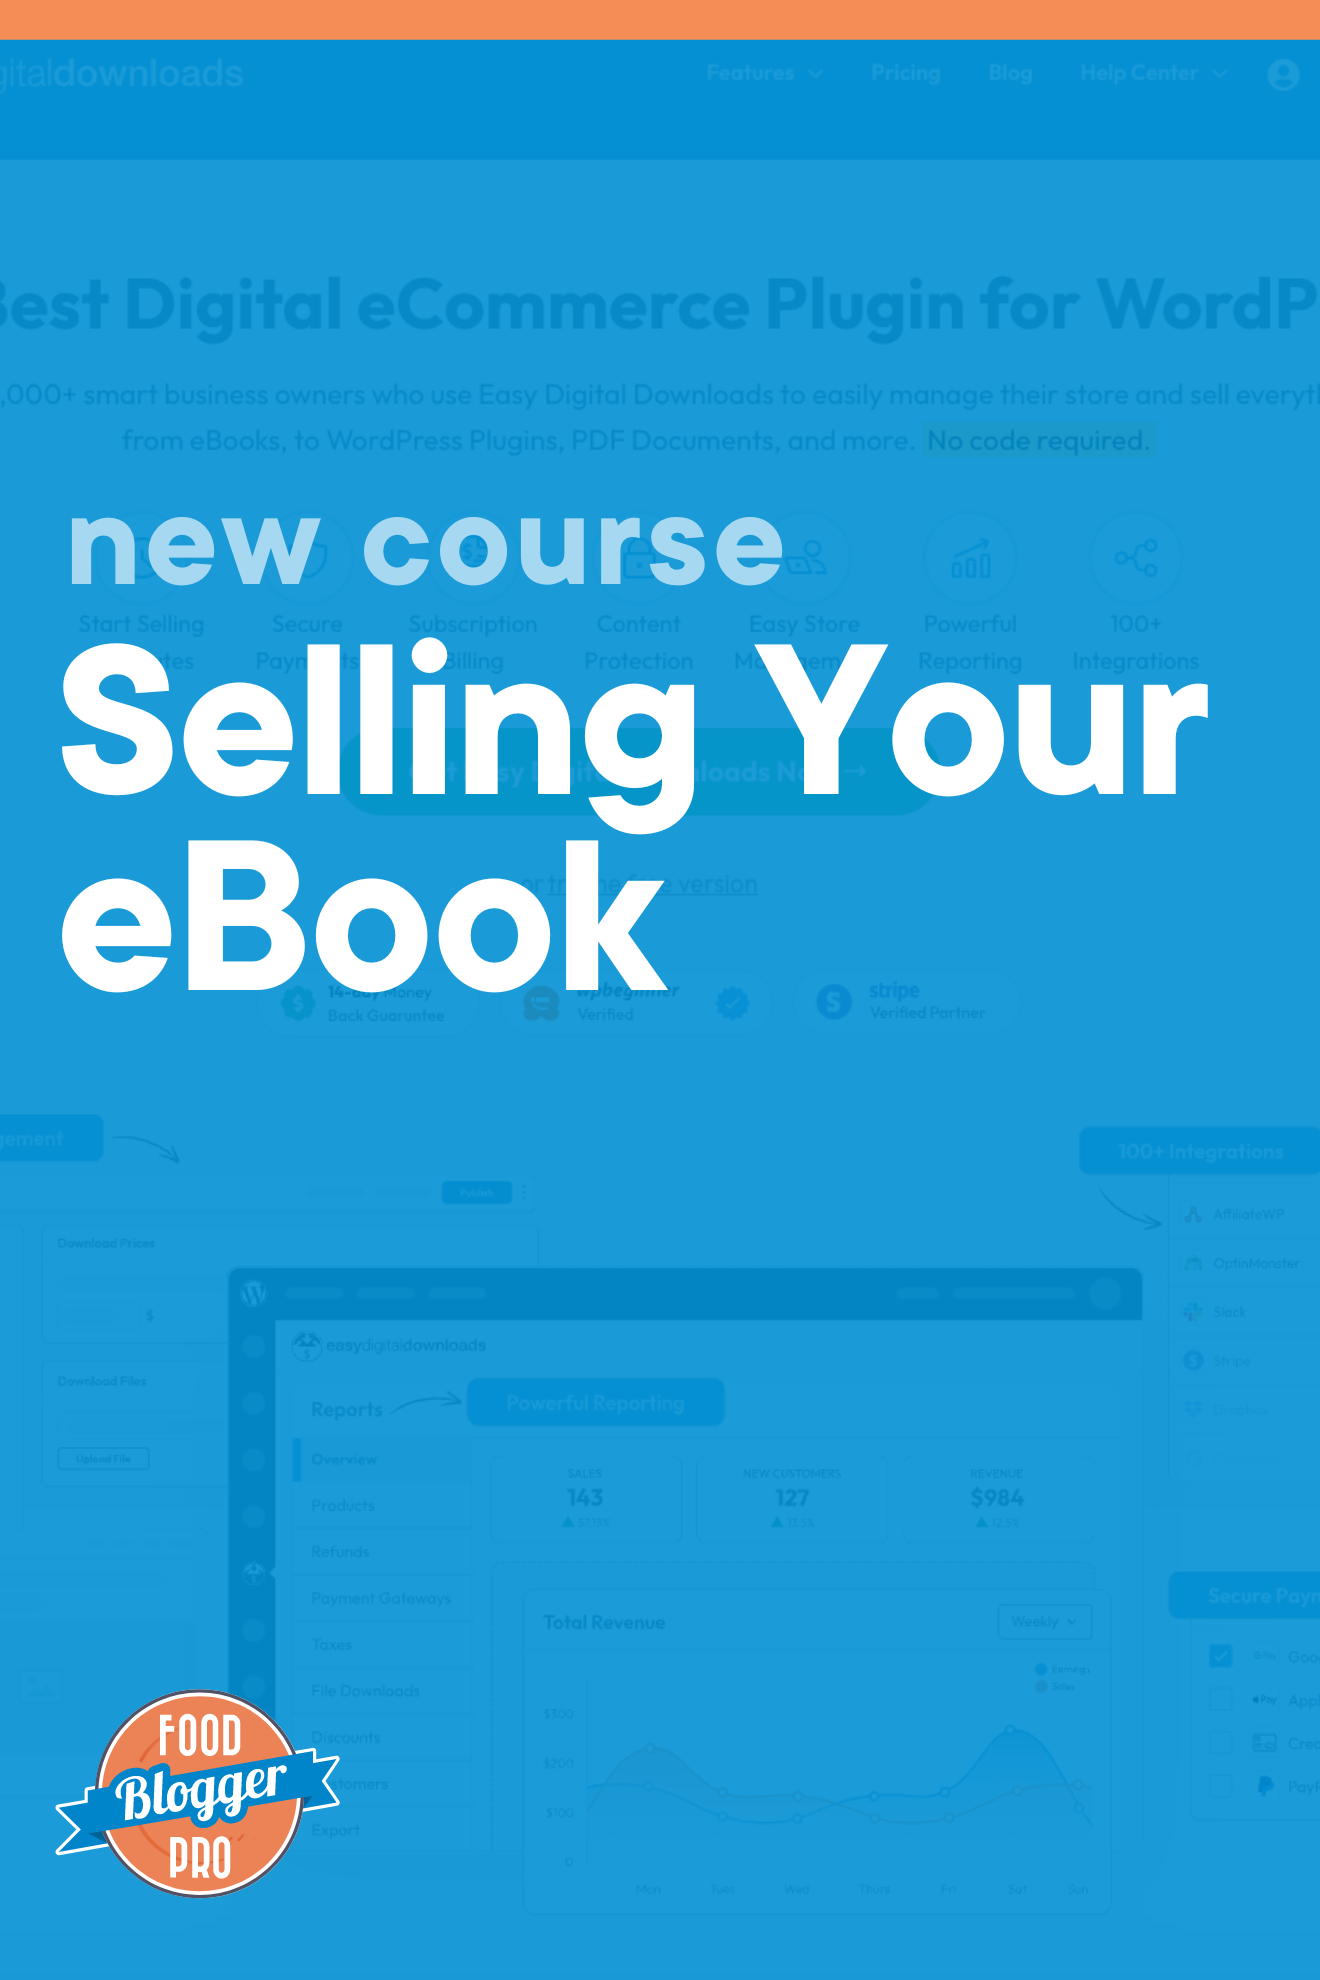 简单数字下载主页截图蓝叠加,博客文章标题, 'NewCourse:Selling your Ebook